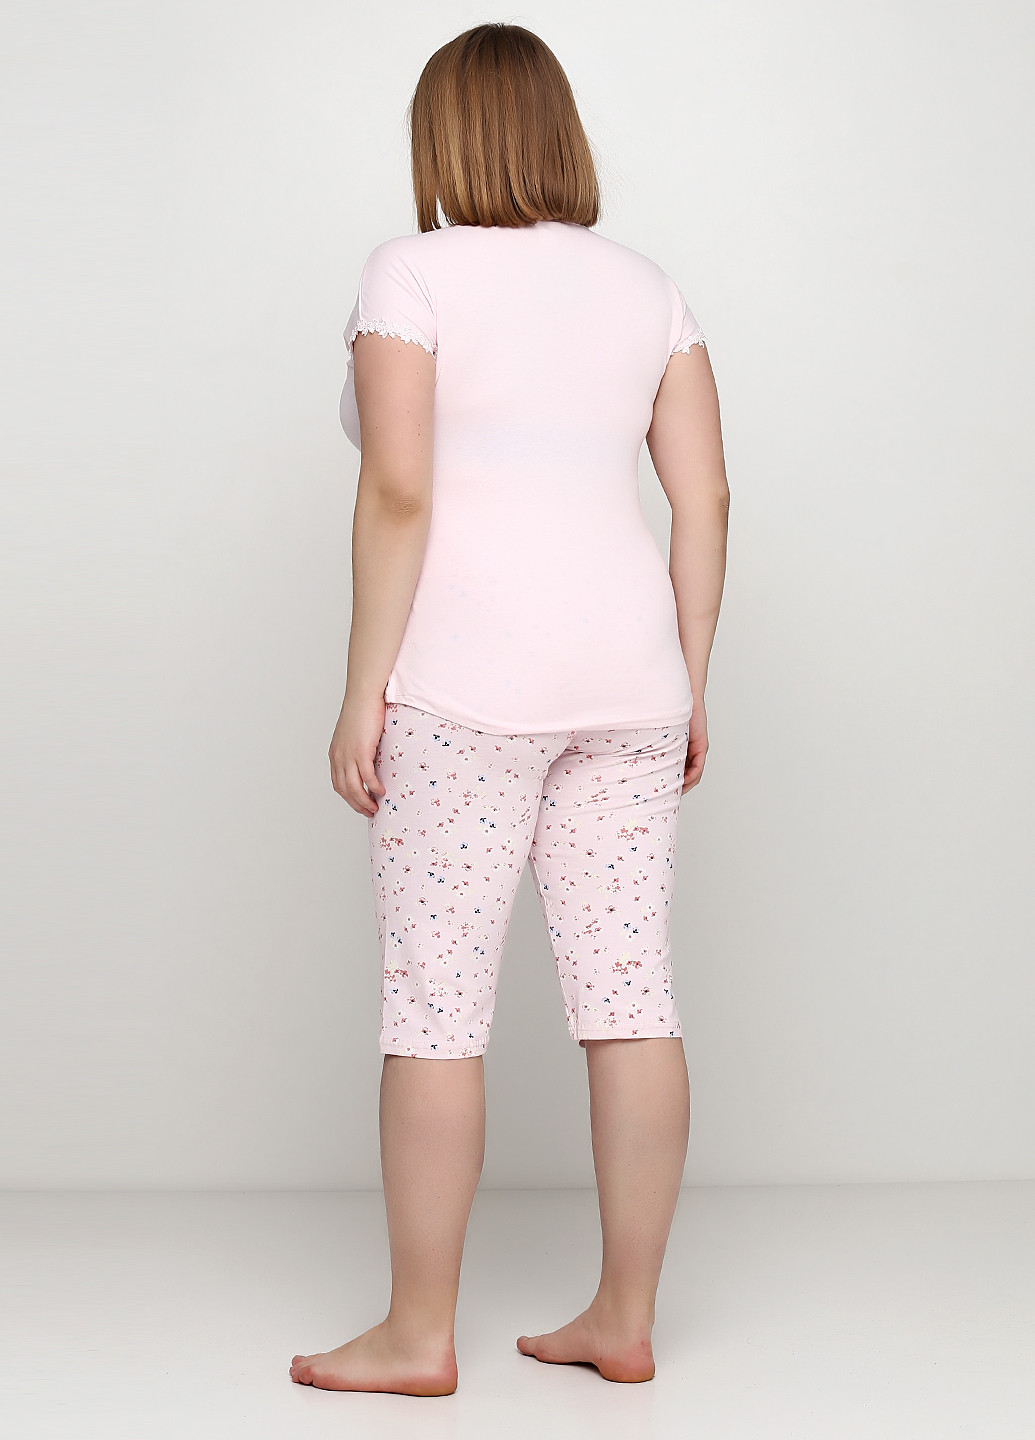 Светло-розовая всесезон пижама (футболка, бриджи) футболка + бриджи Sexen